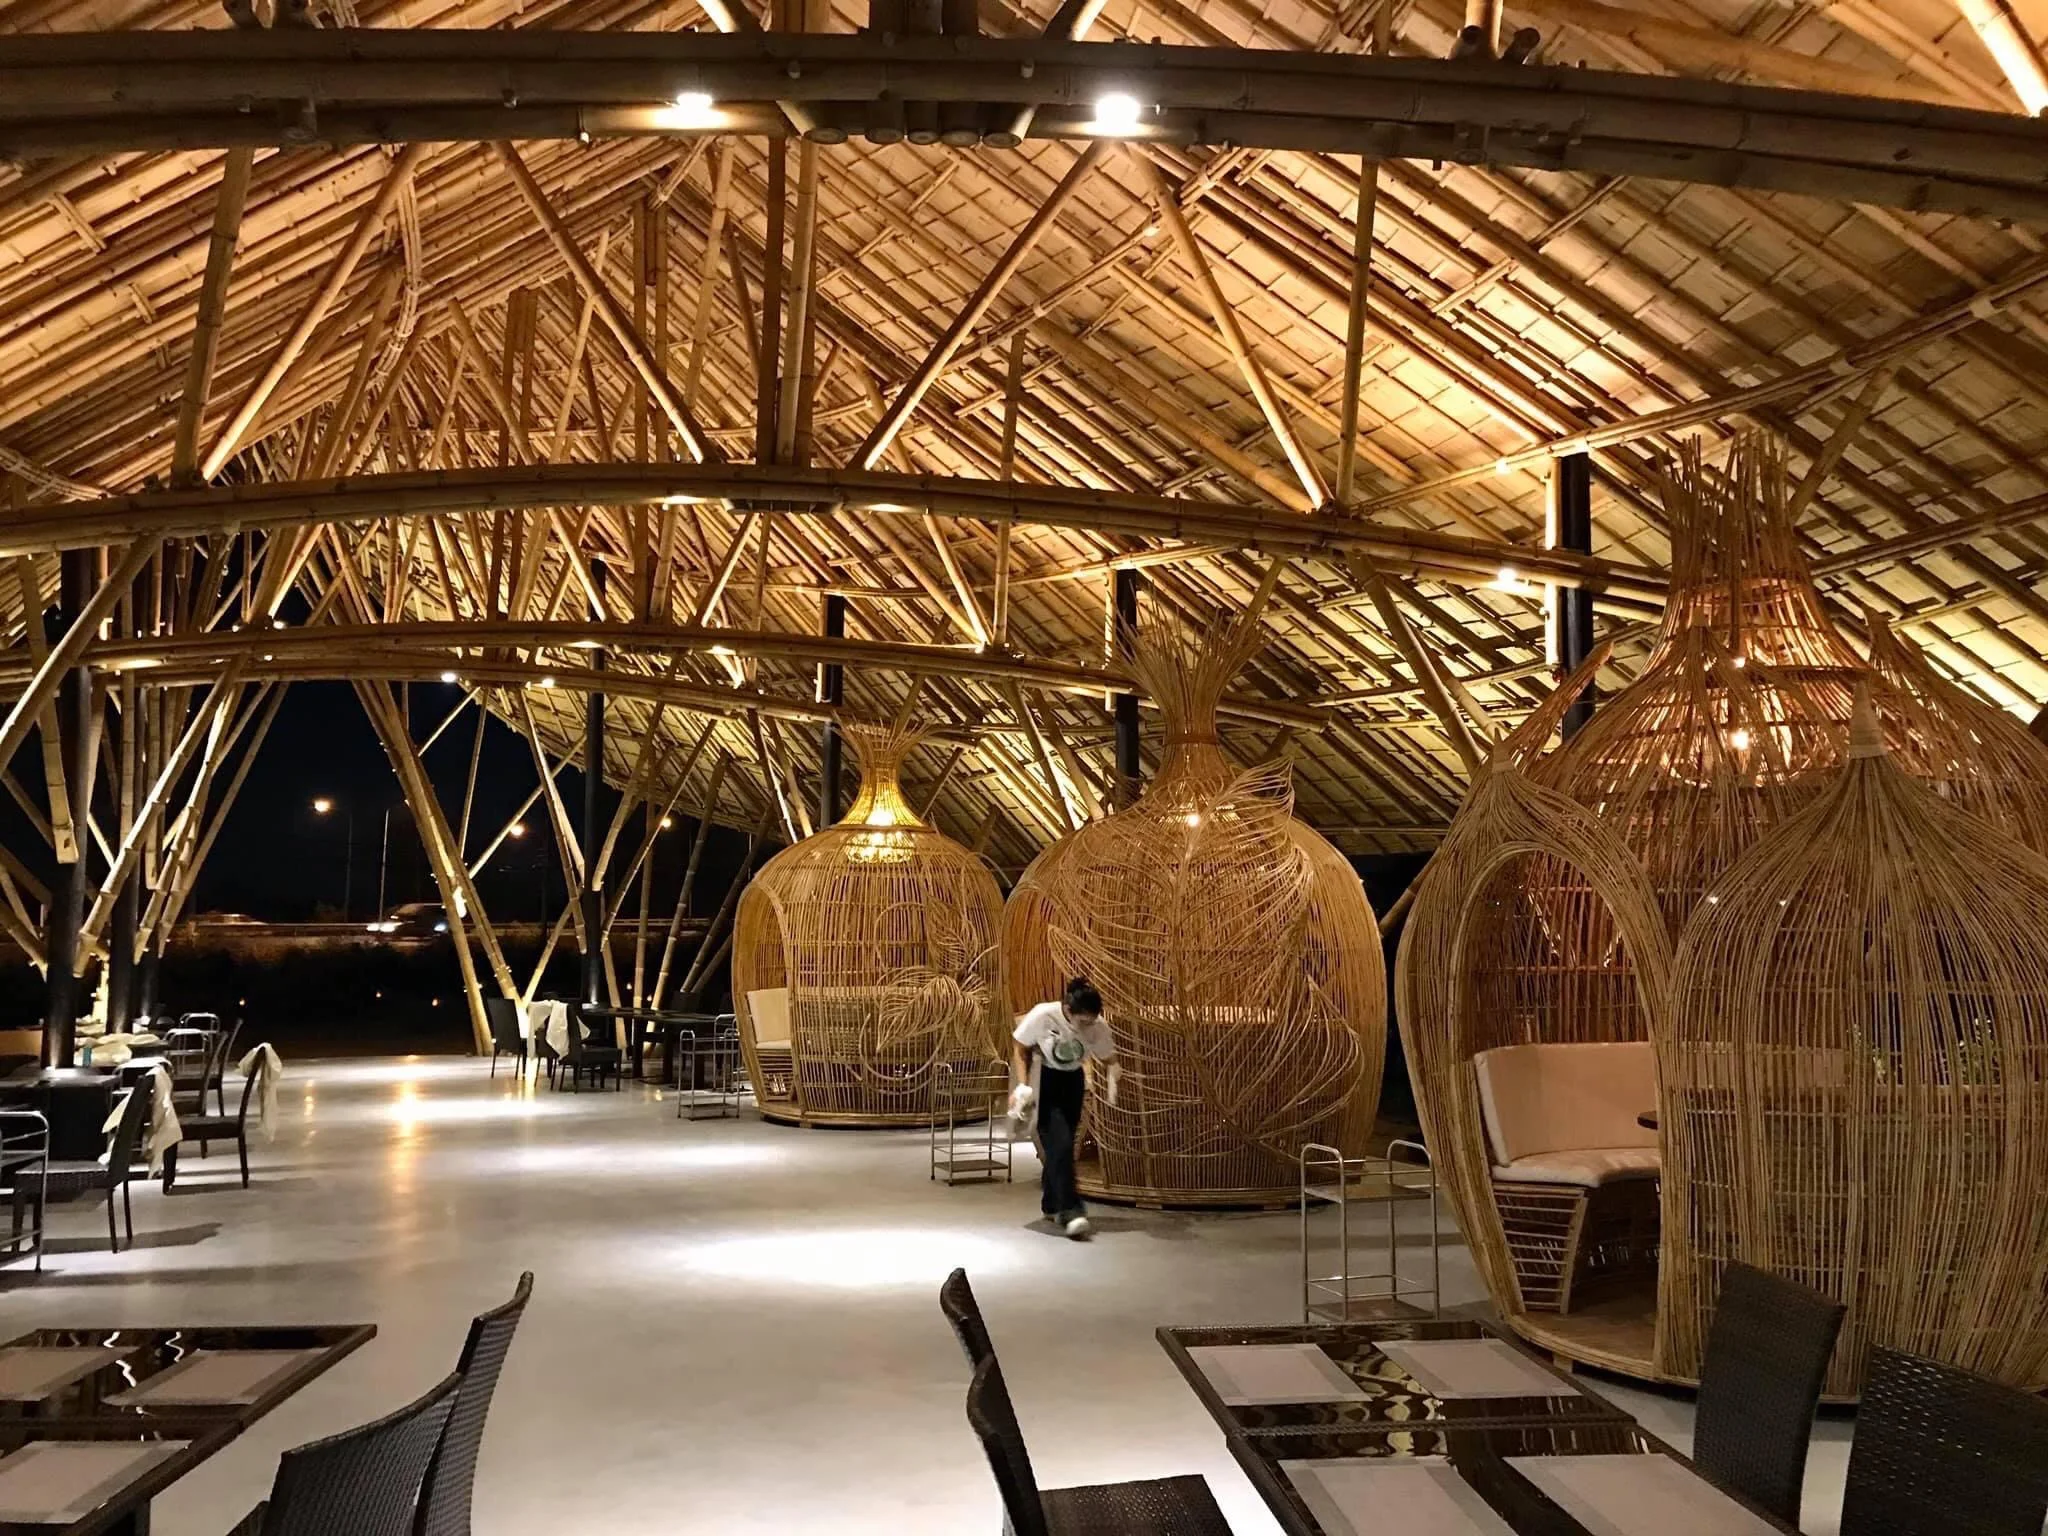 ภาพ: อาคารไม้ไผ่ร้าน Bamboo ใหญ่สุวินทวงศ์